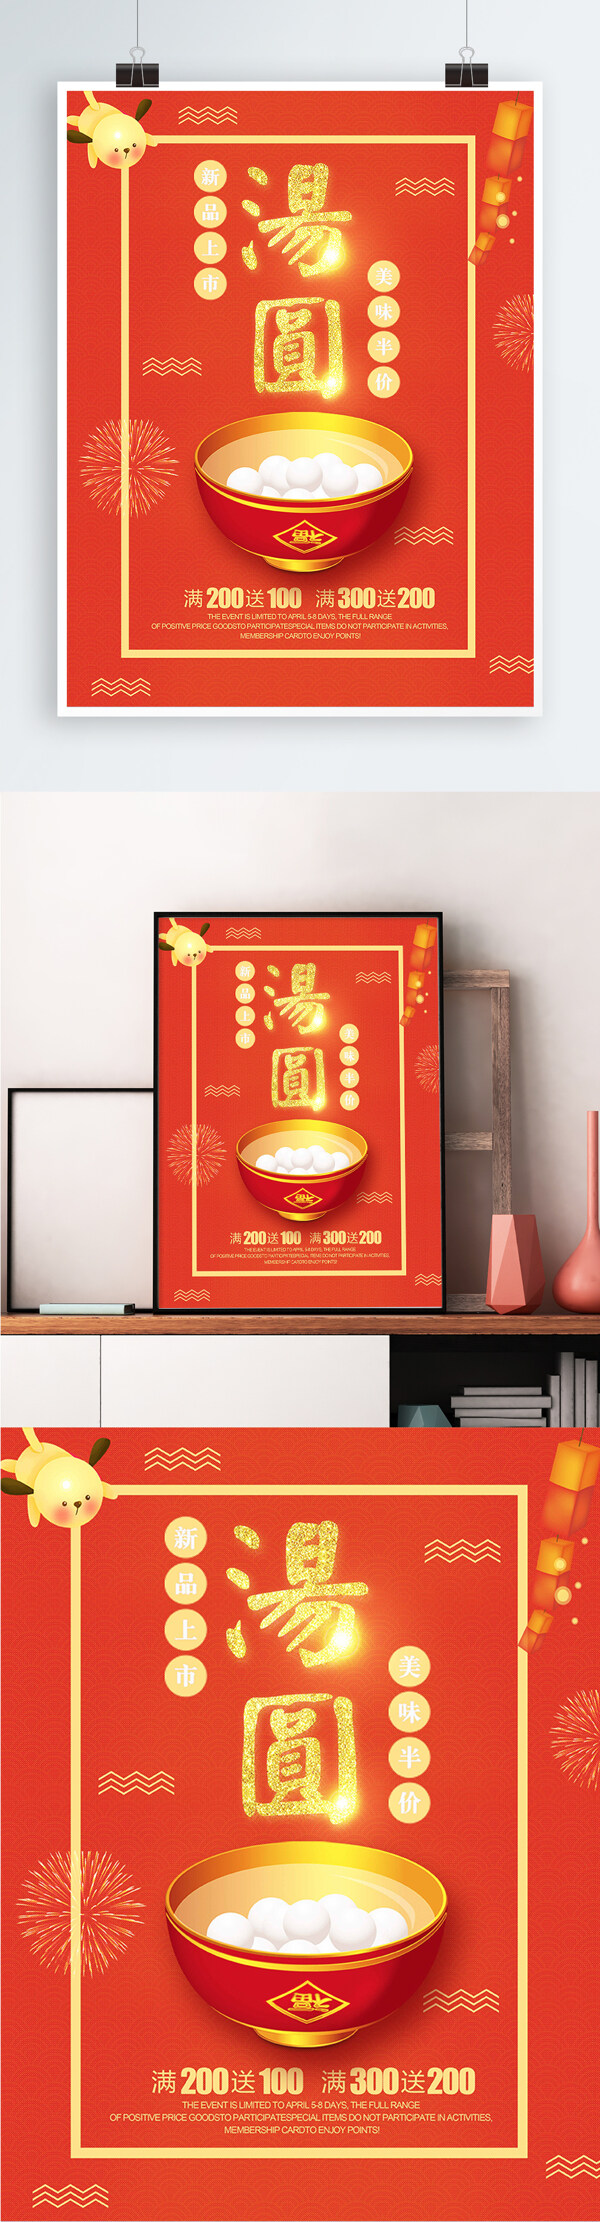 红色背景简约中国风美味汤圆宣传海报